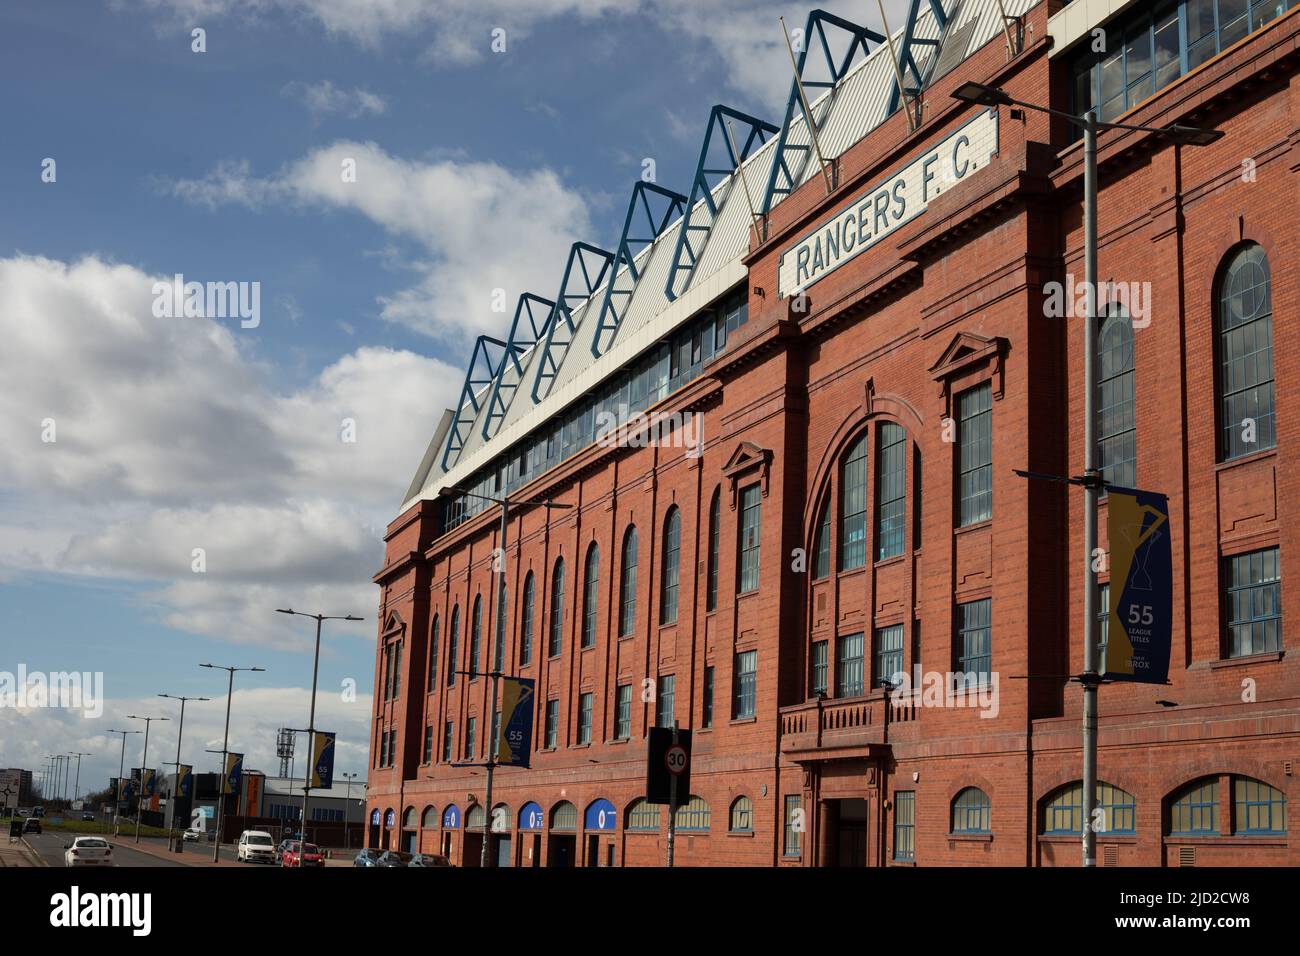 Viste dell'esterno dell'Ibrox Stadium, sede del Rangers Football Club, a Ibrox, a Glasgow, Scozia, 7 aprile 2022. N55°51,135' W4°18,569' Foto Stock